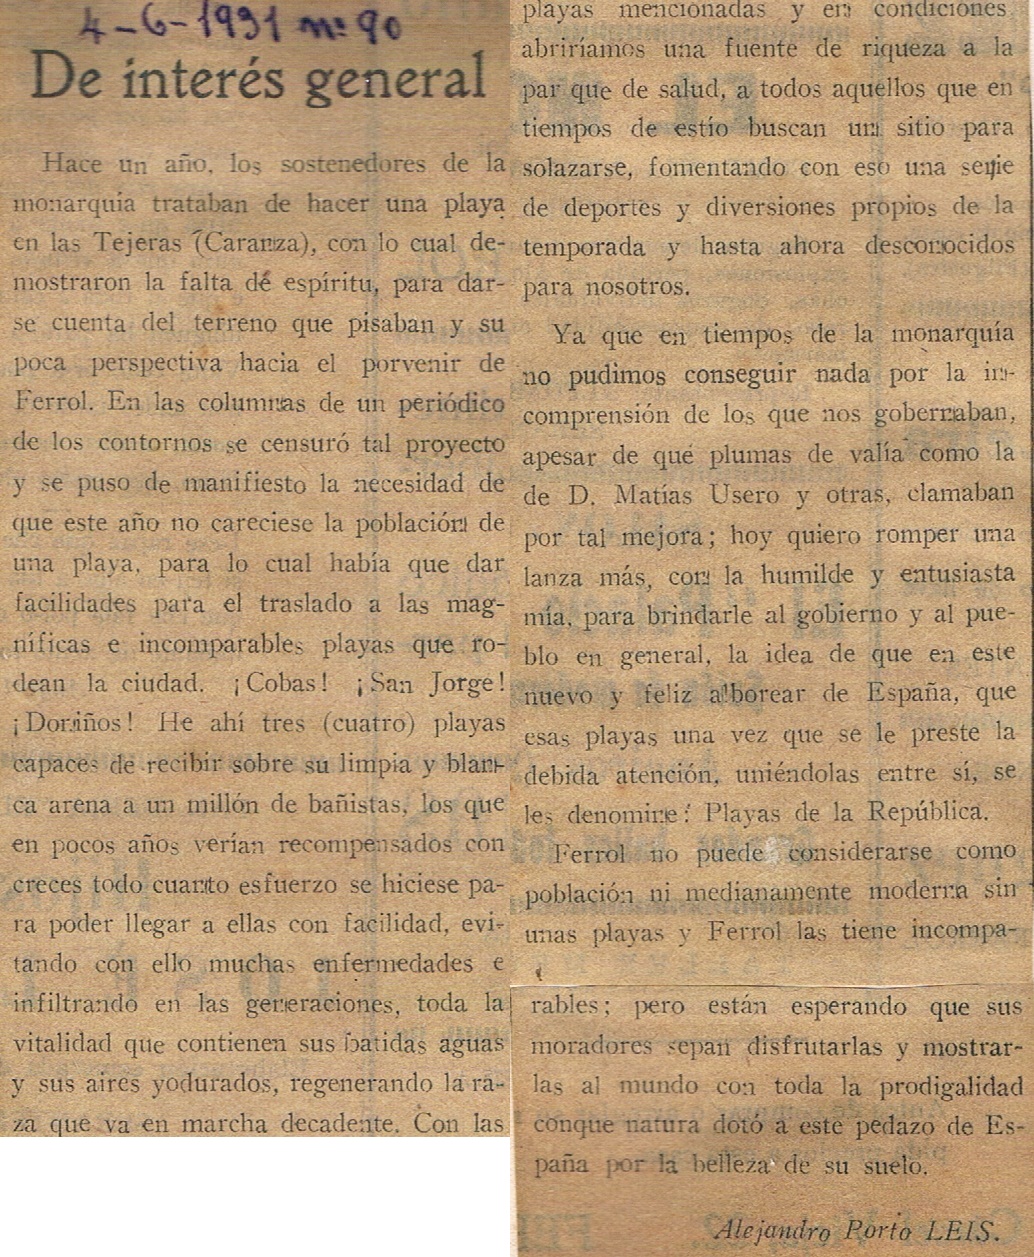 La Libertad 04-06-1931. Nº 90 (Alejandro Porto Leis)